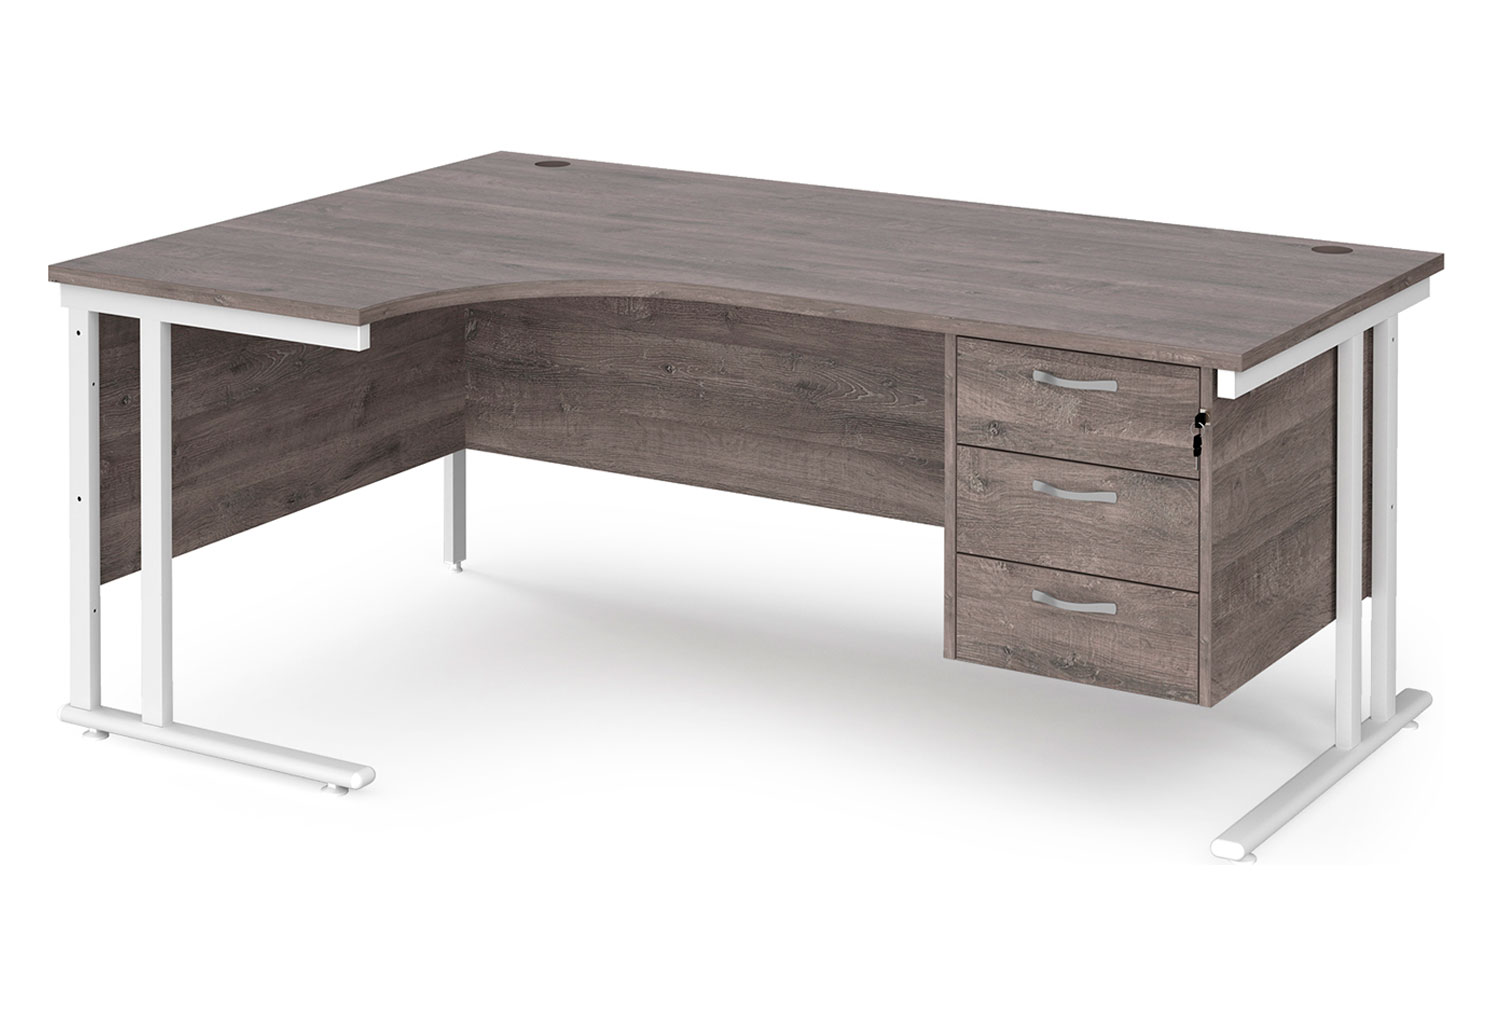 Value Line Deluxe C-Leg Left Hand Ergonomic Office Desk 3 Drawers (White Legs), 180wx120/80dx73h (cm), Grey Oak, Fully Installed